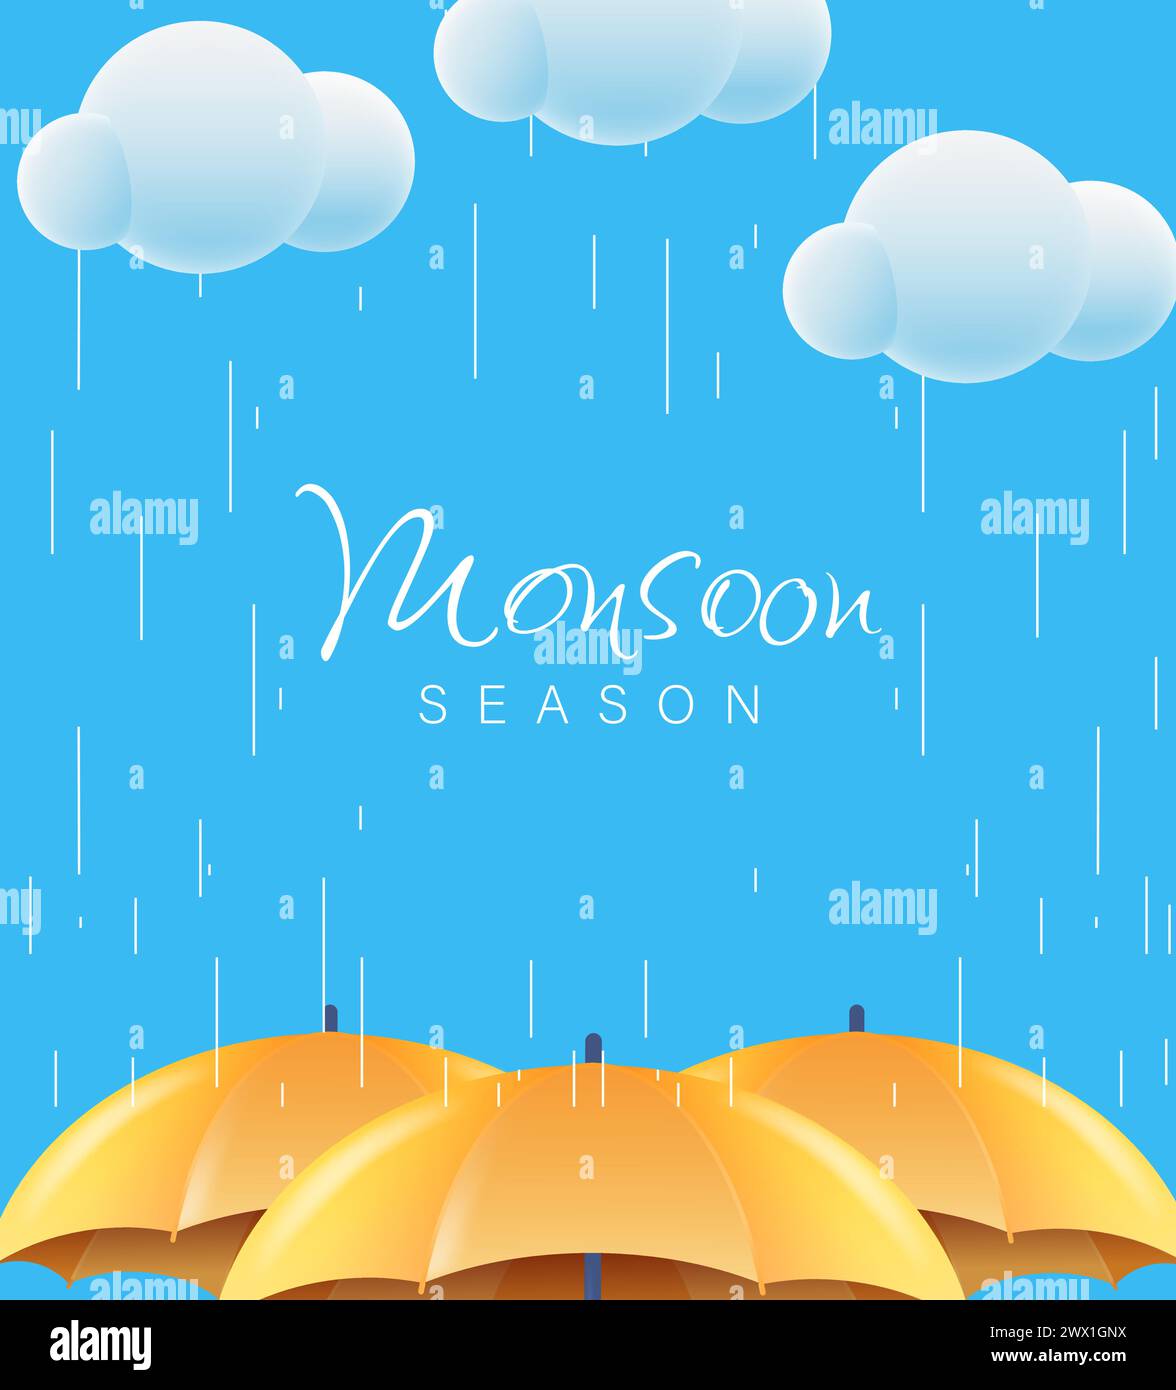 Monsun-Saison-Angebot mit realistischer 3D-Regenschirm-Vektor-Illustration. Geeignet für Poster, Banner, Flyer, Webheader und Anzeigenseitendesign. Stock Vektor